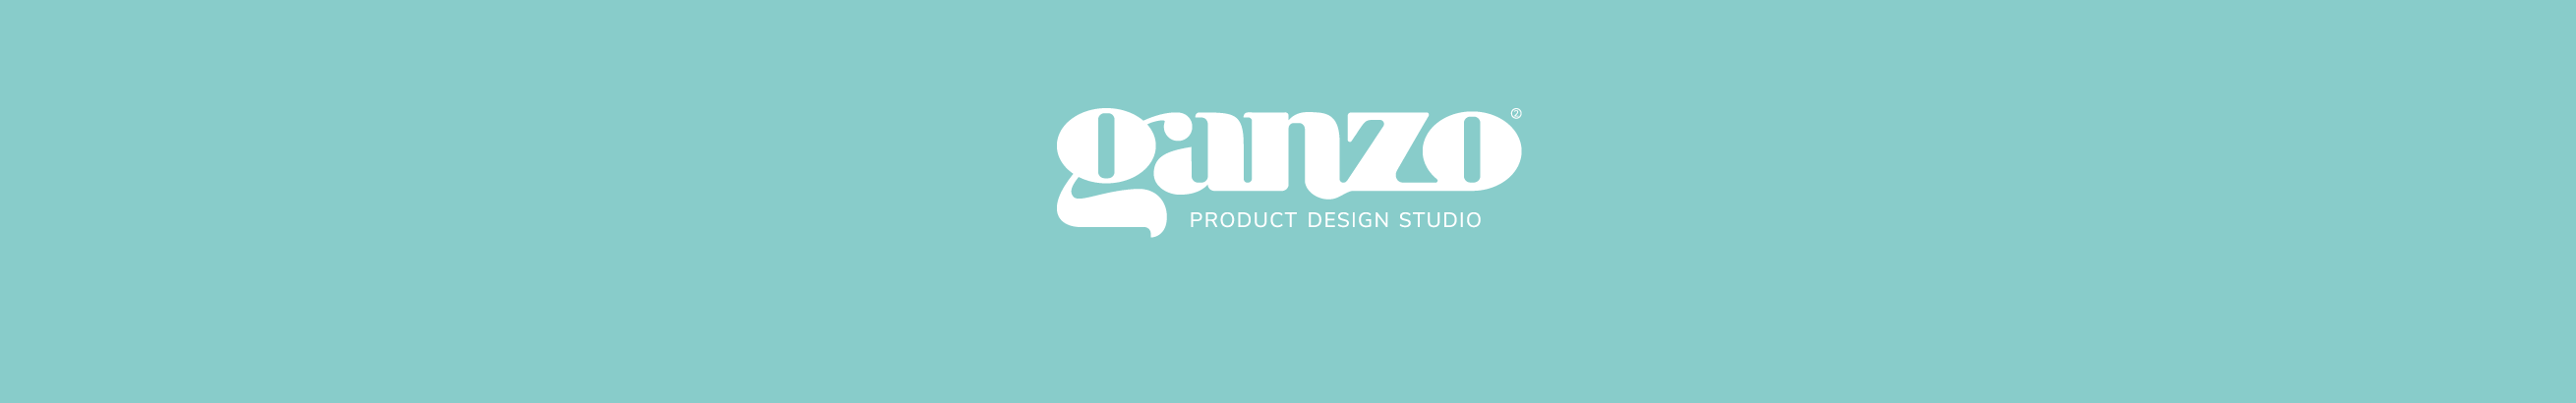 Ganzo Design Studio's profile banner